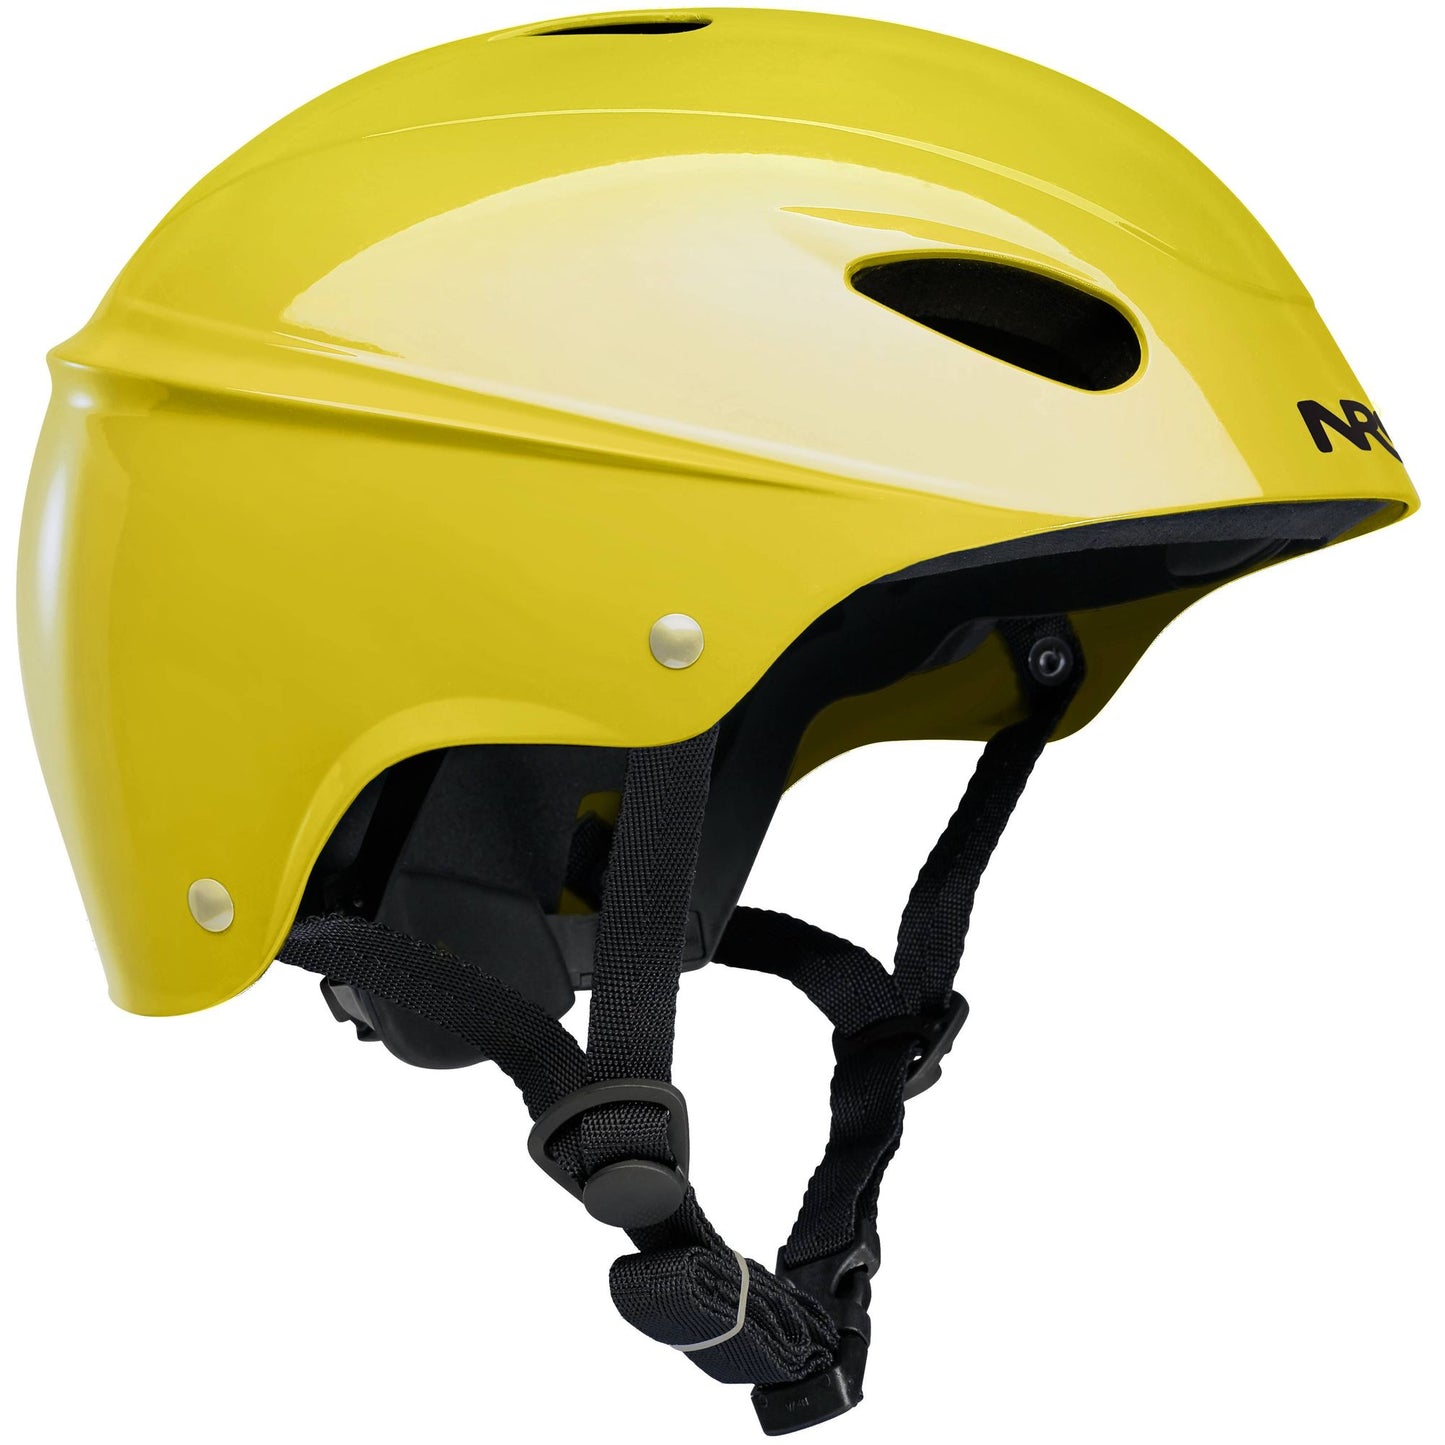 NRS Havoc Helmet Adjustable Size